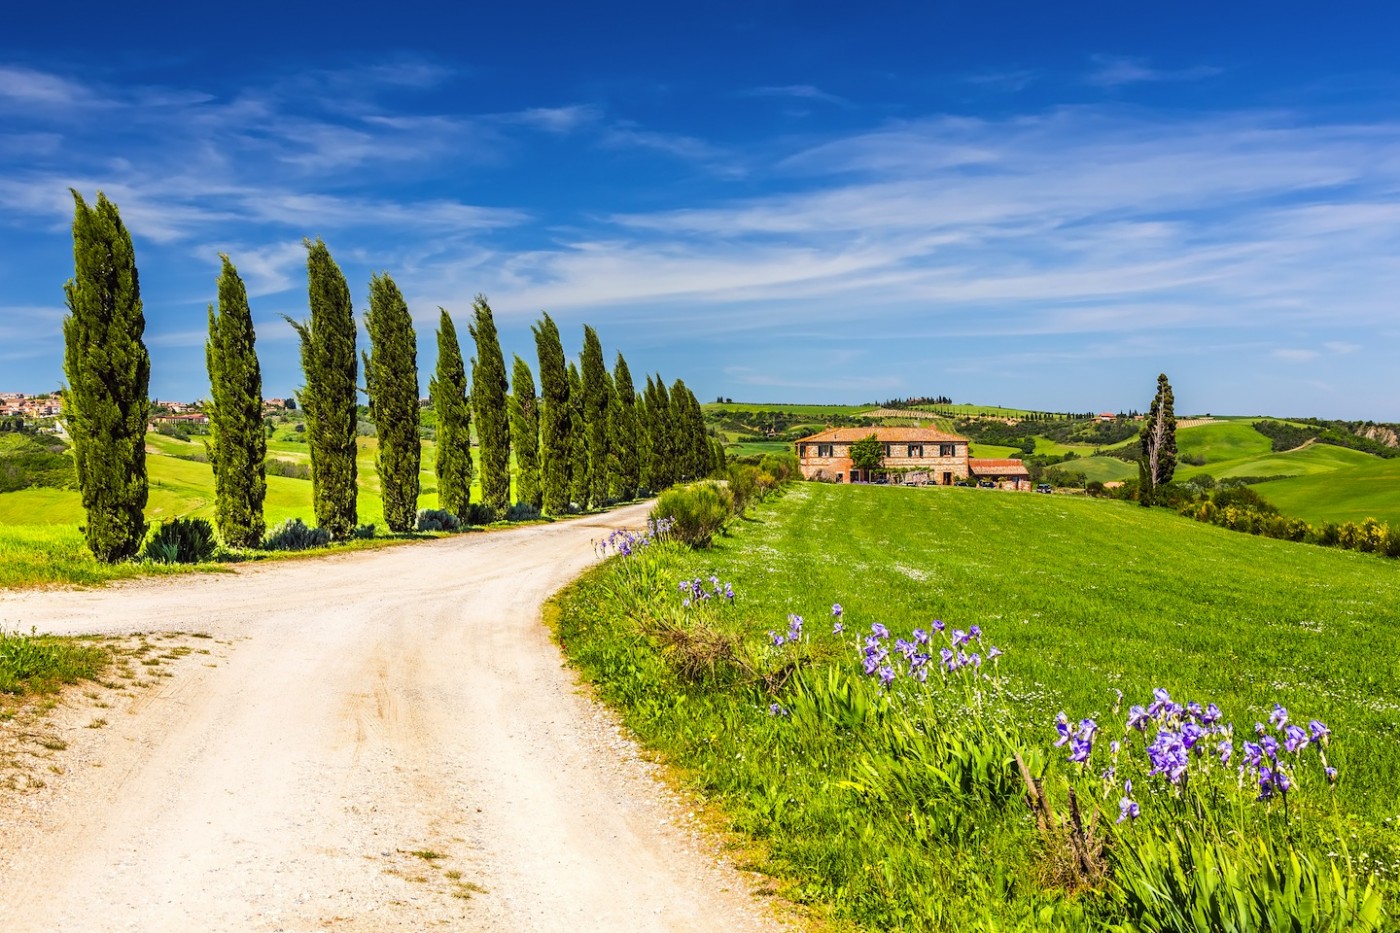 Moltissime sono le ville in Toscana dove passare le vacanze o organizzare cerimonie e ricevimenti. Qui le 5 più belle ville in Toscana in provincia di Pisa